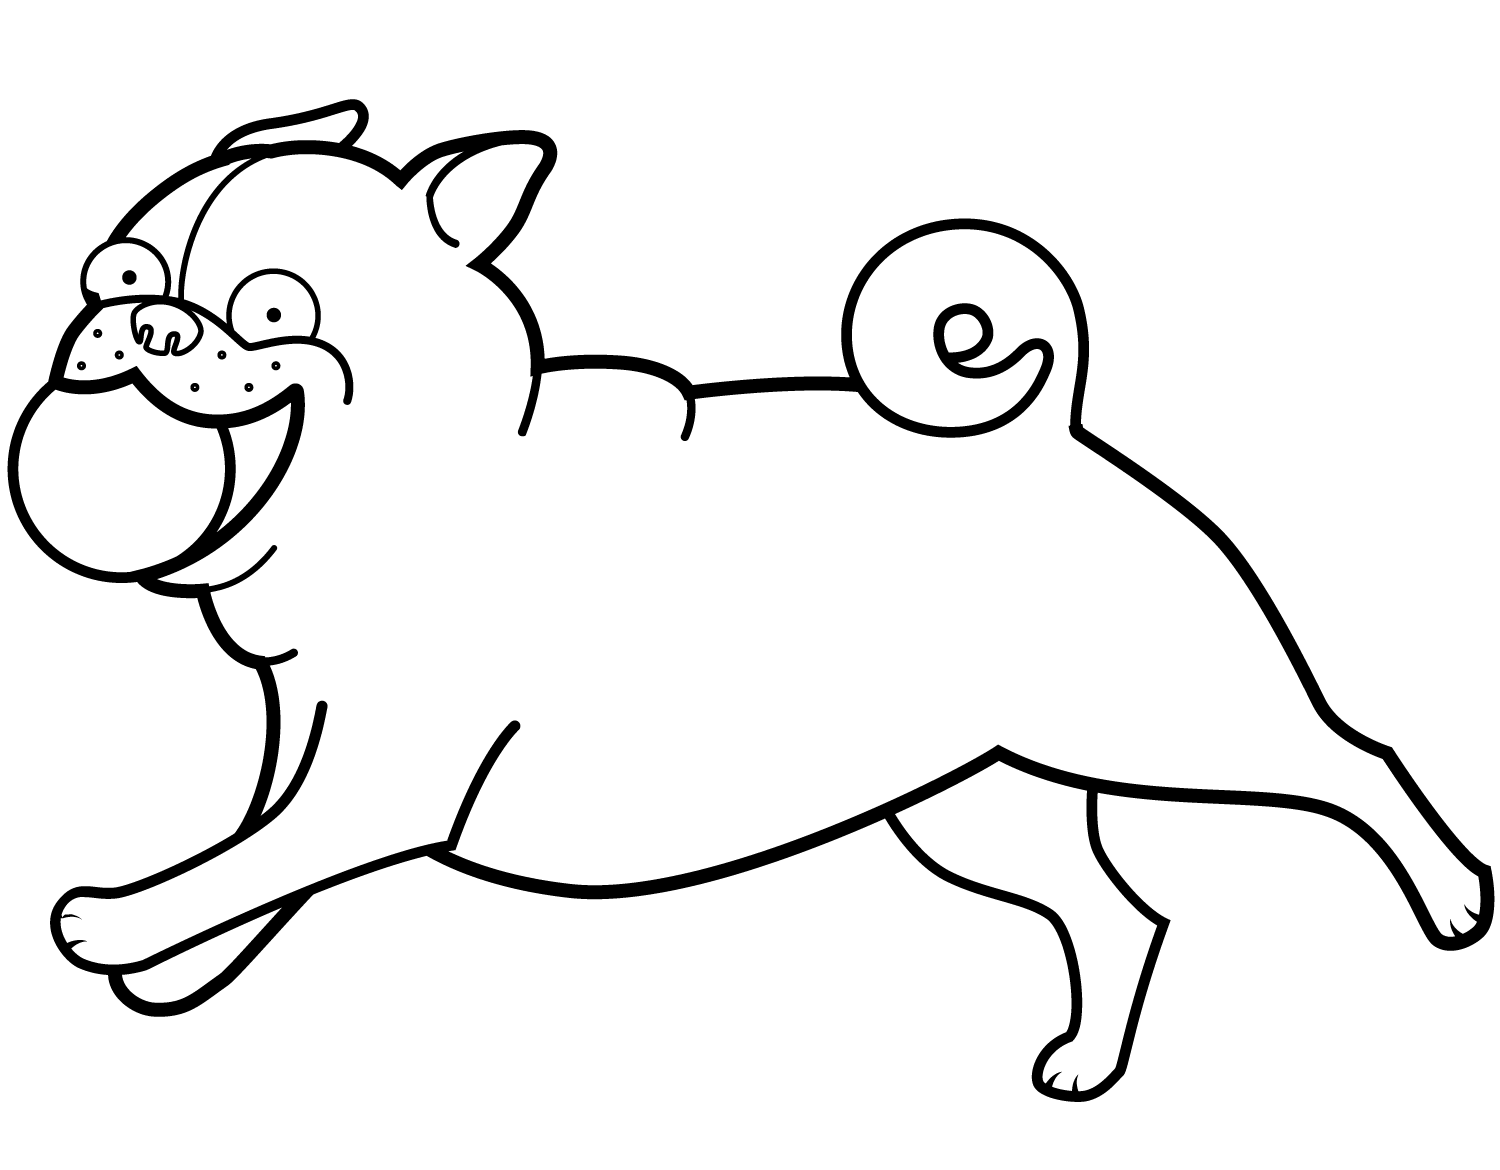 Funny Pug Playing Ball Coloring Page - Free Printable ...